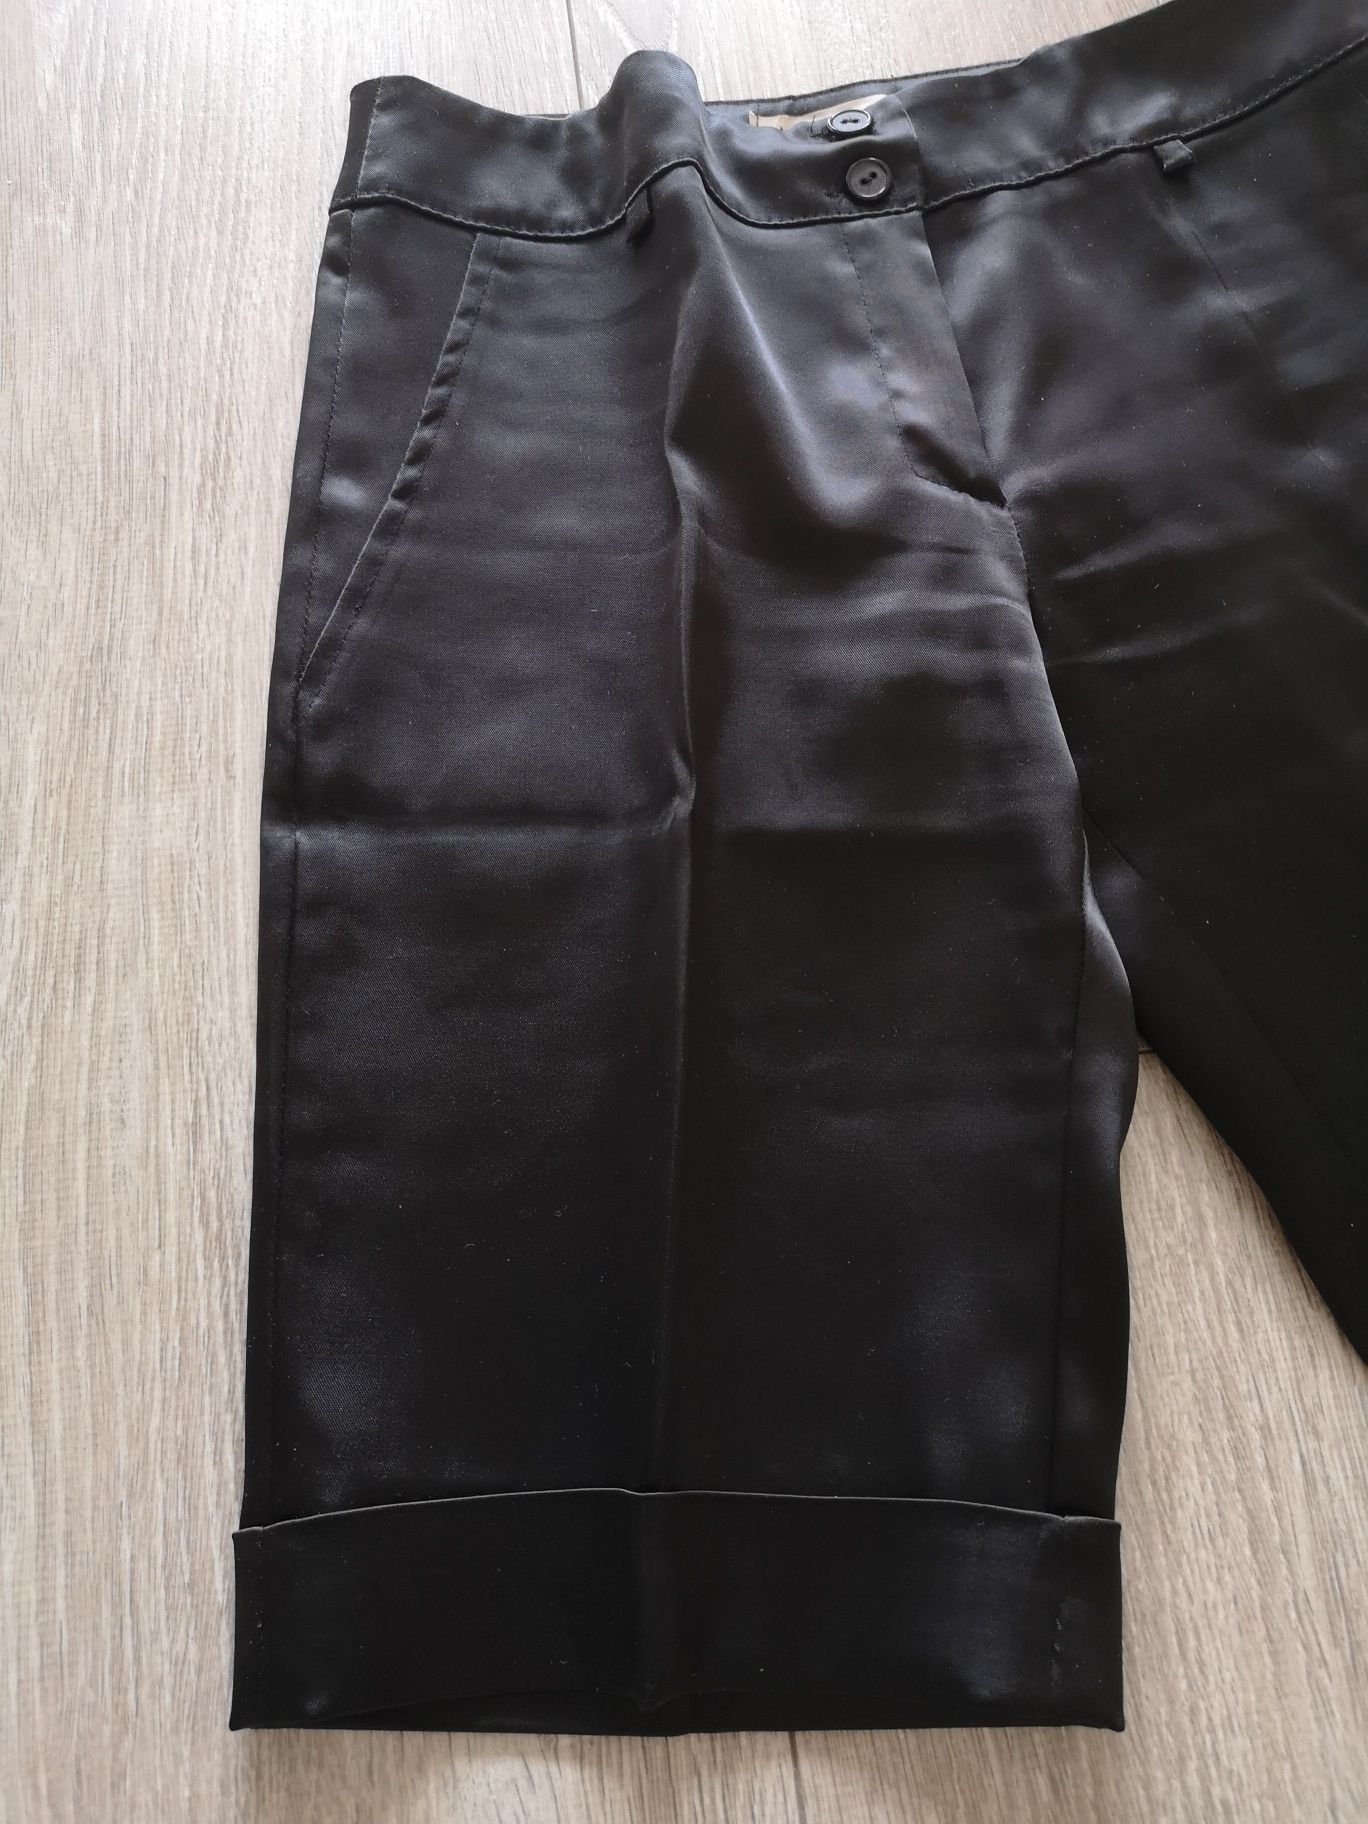 Spodnie spodenki krótkie 38 M eleganckie nowe szorty czarne kanty